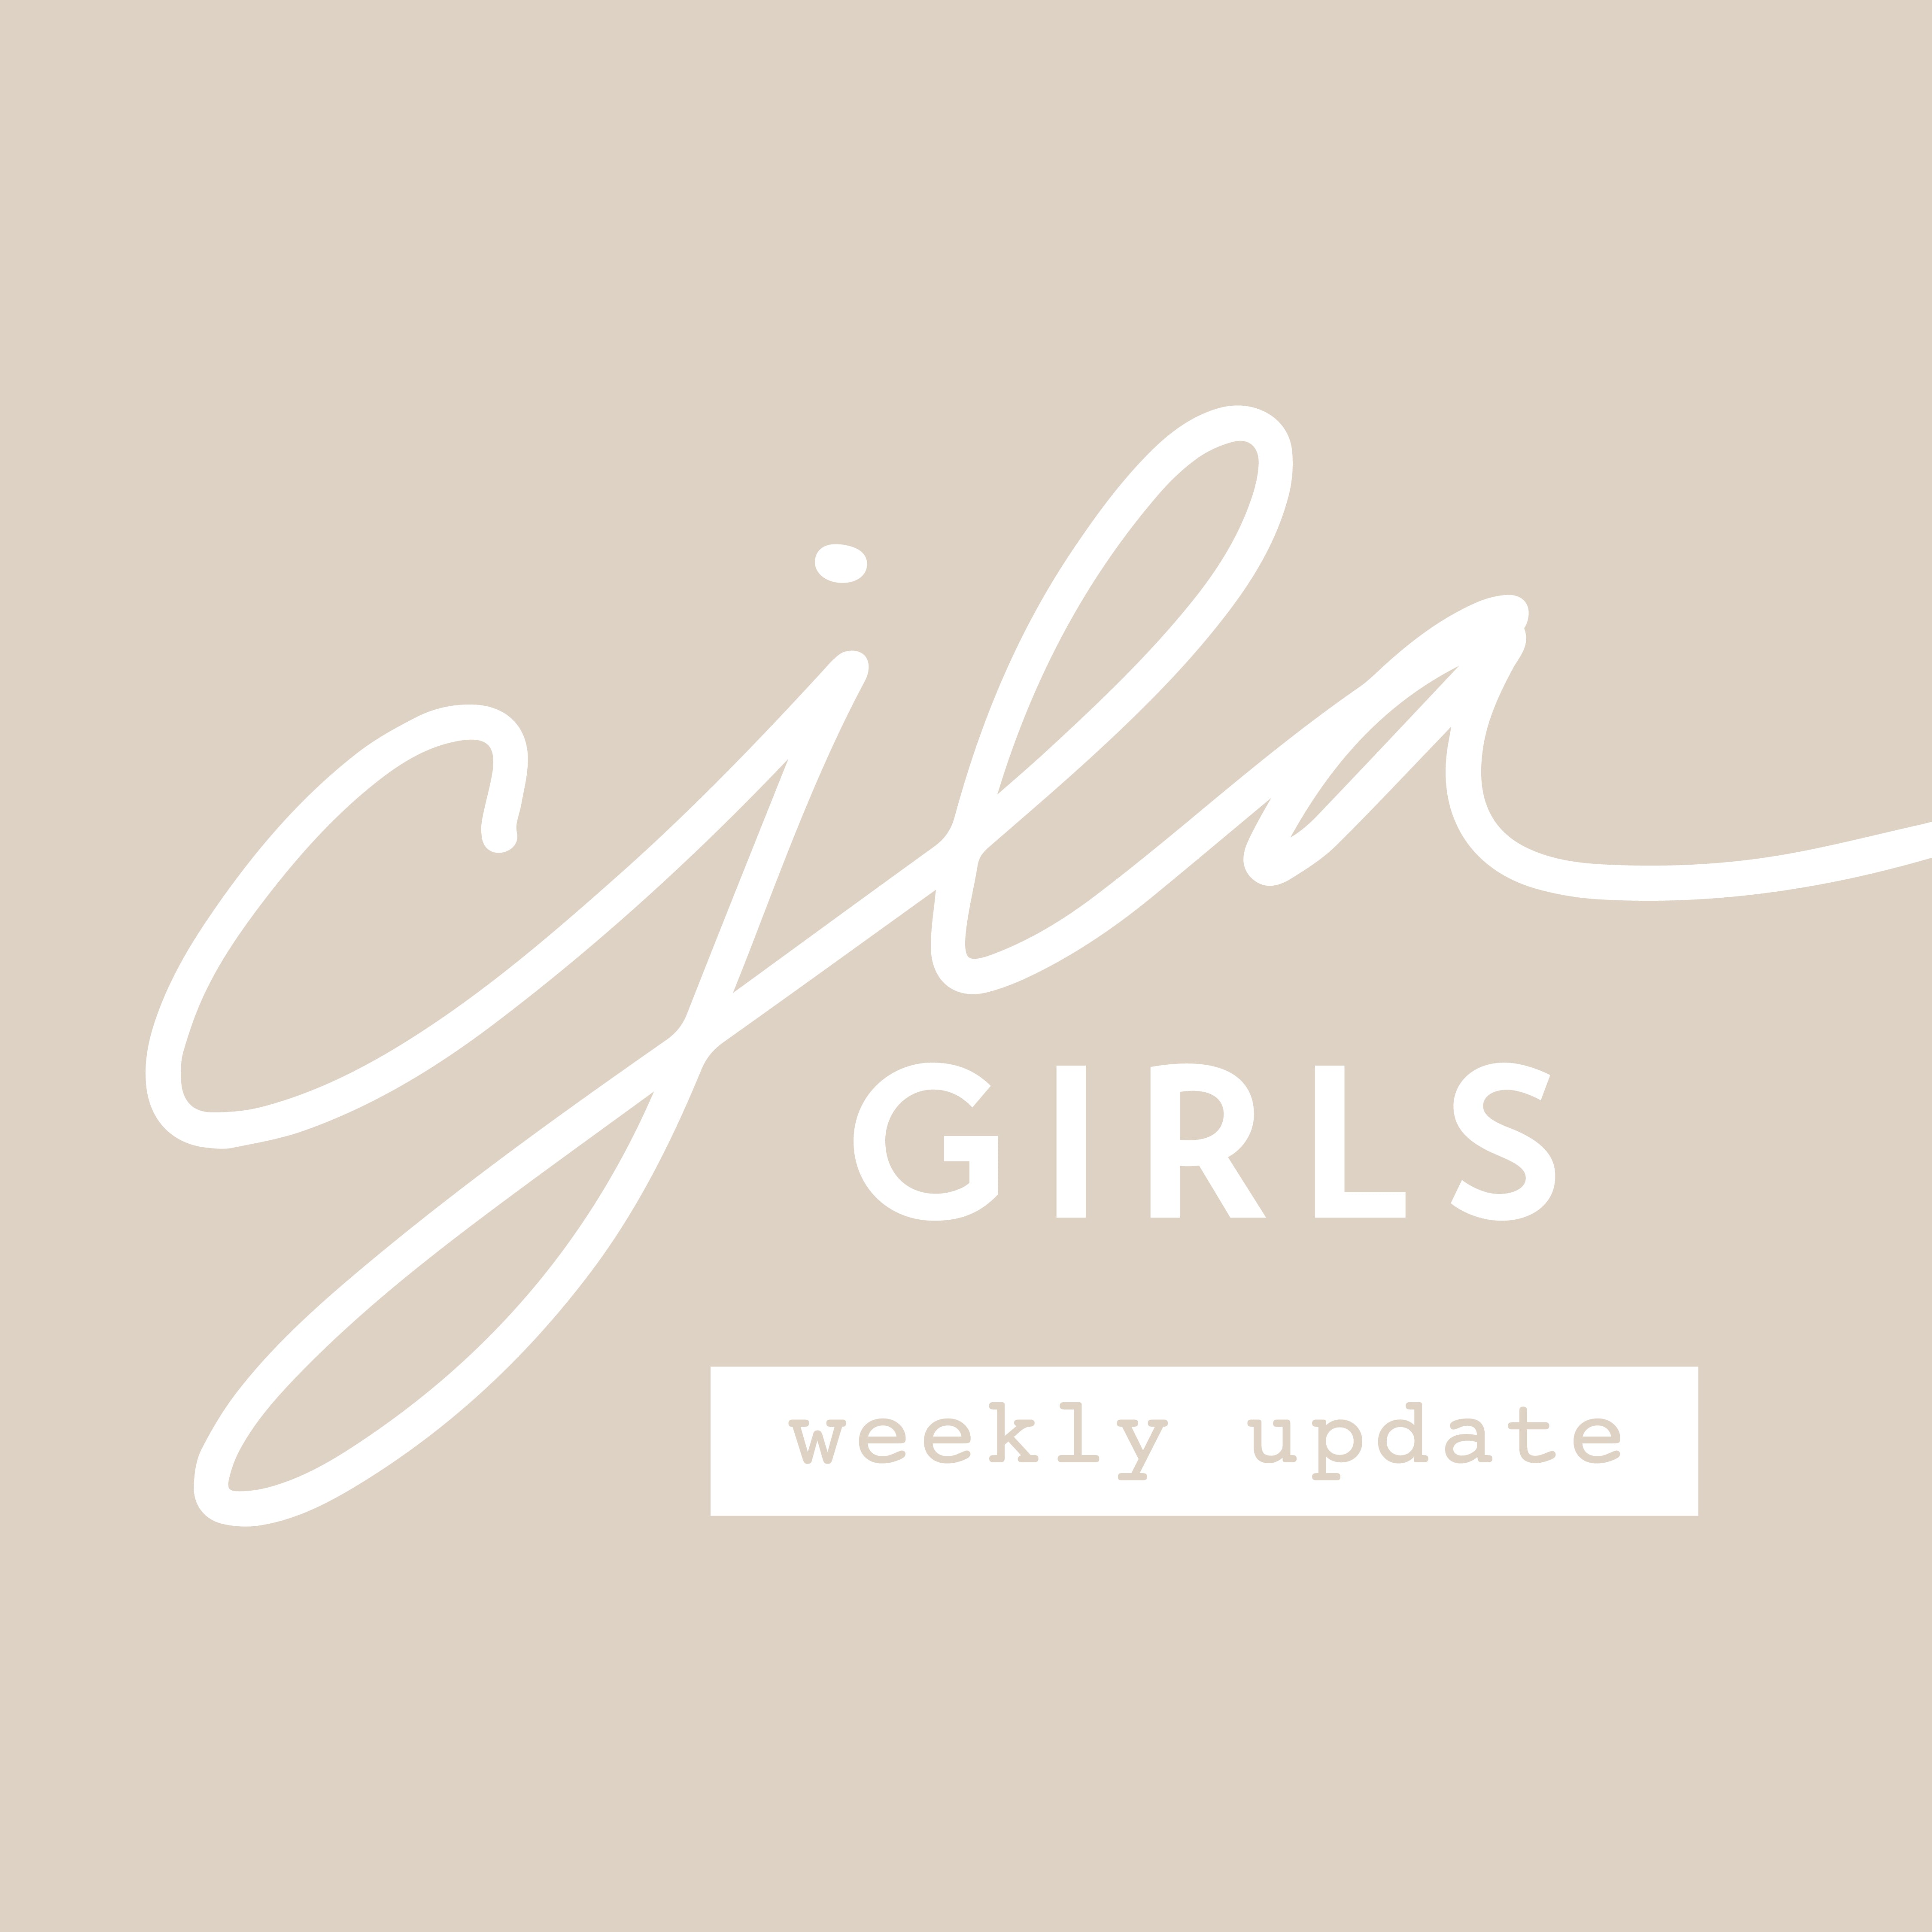 CJLA Girls Weekly Update: August 16-22